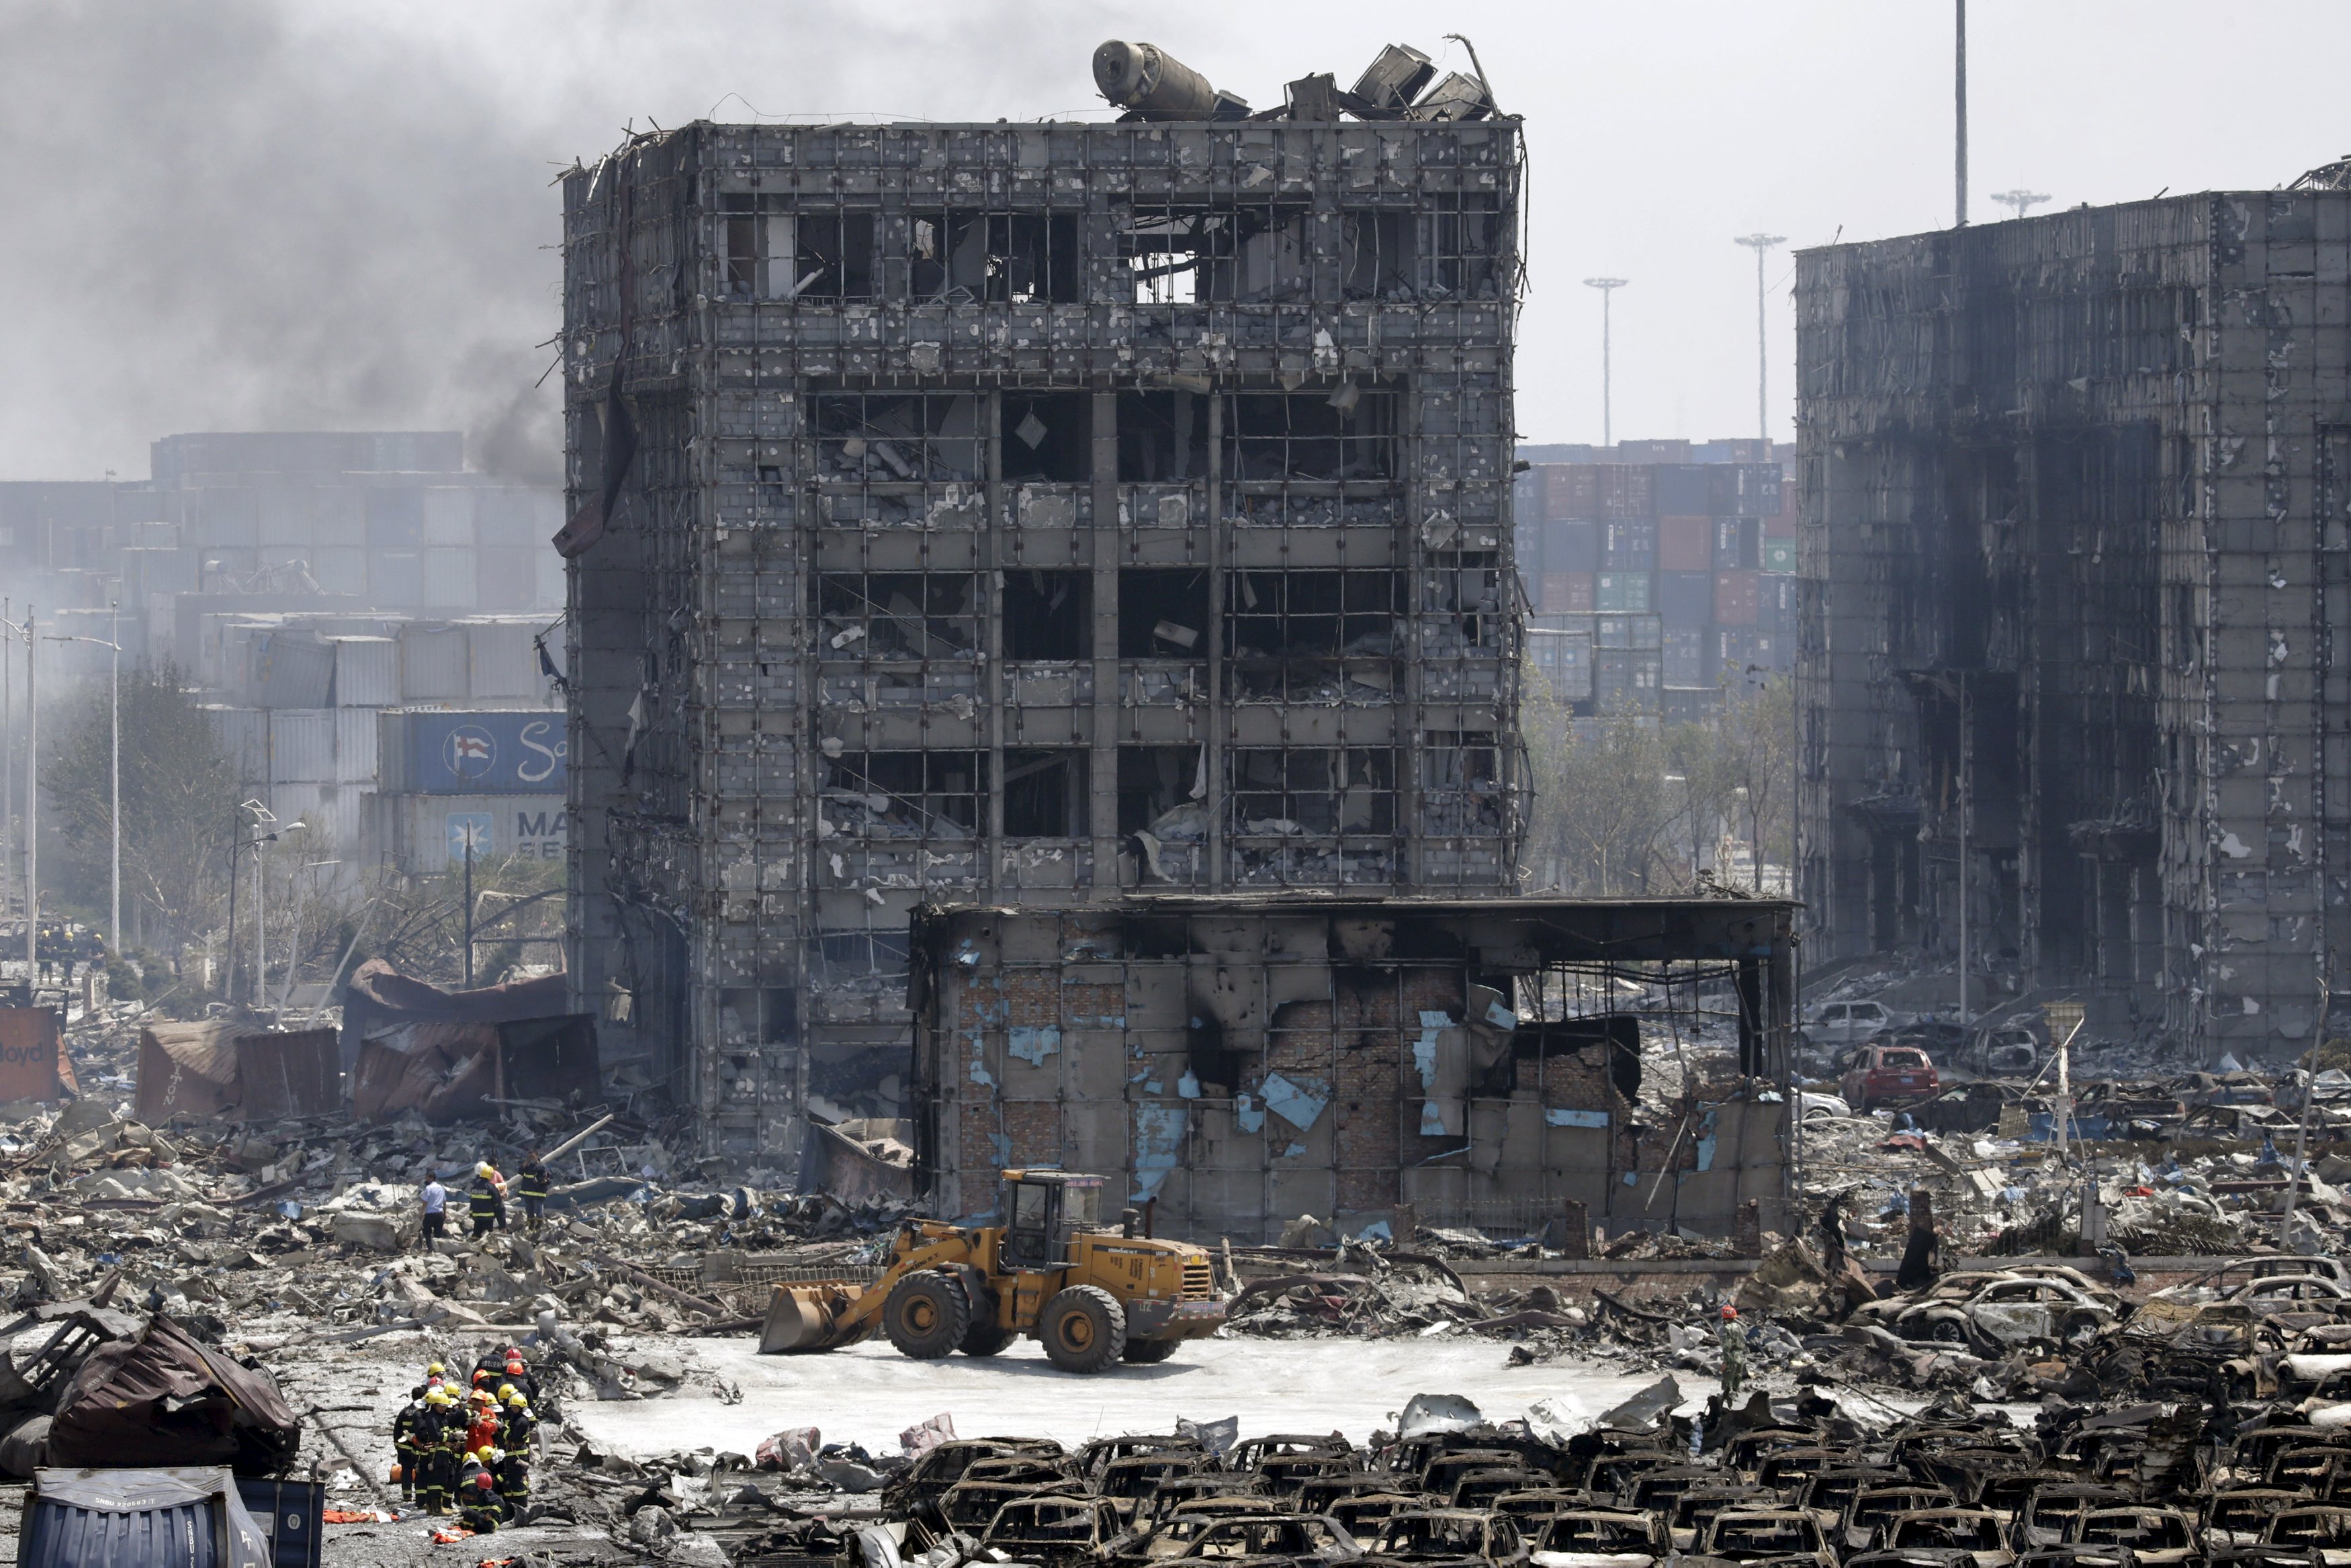 Город после взрыва. Техногенная катастрофа в Китае в августе 2015. Разрушенное здание.